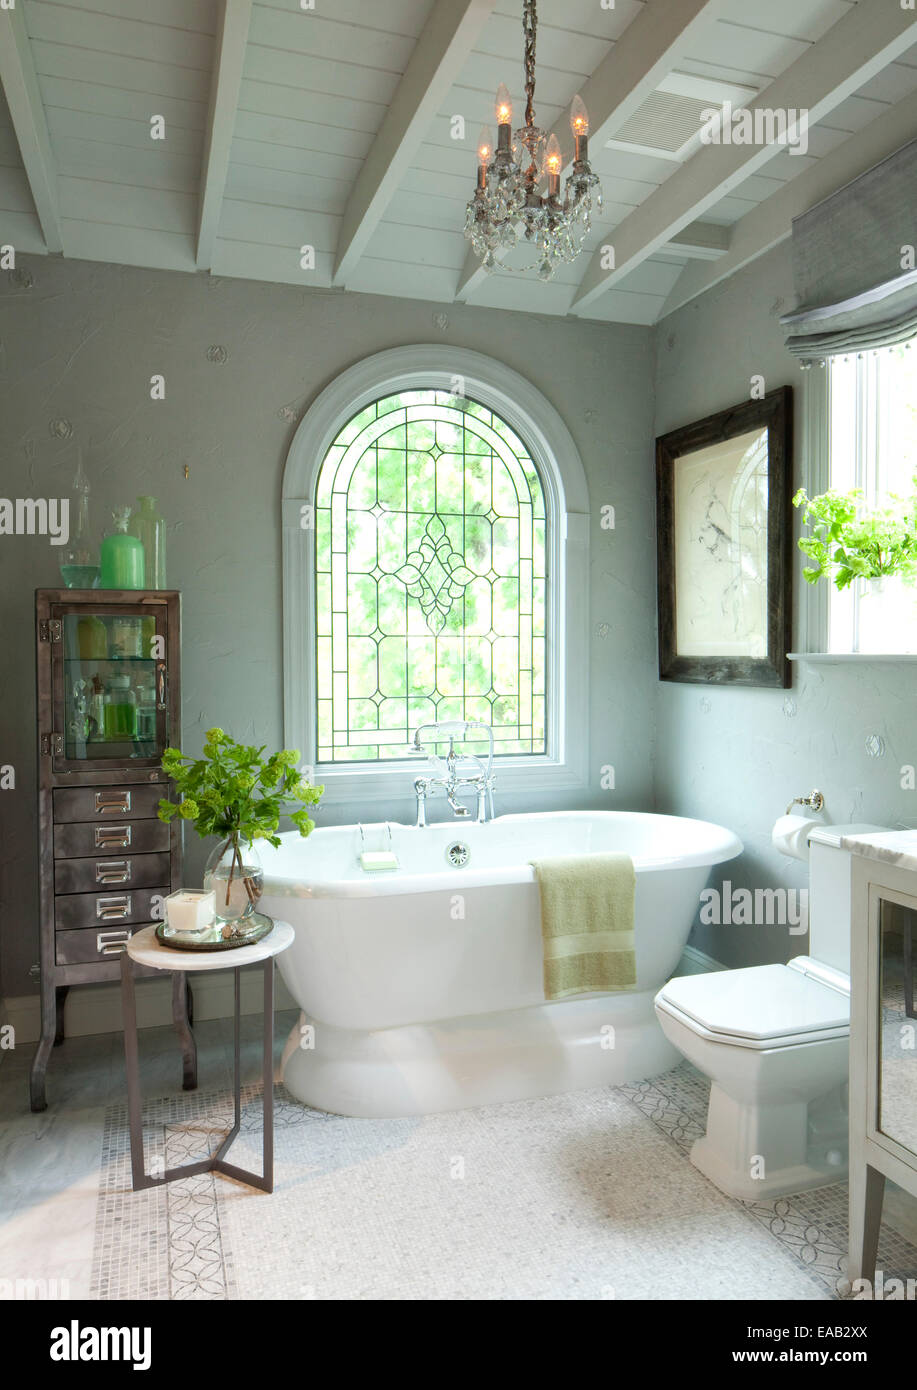 Baño moderno con una gran ventana y bañera de cerámica. Foto de stock